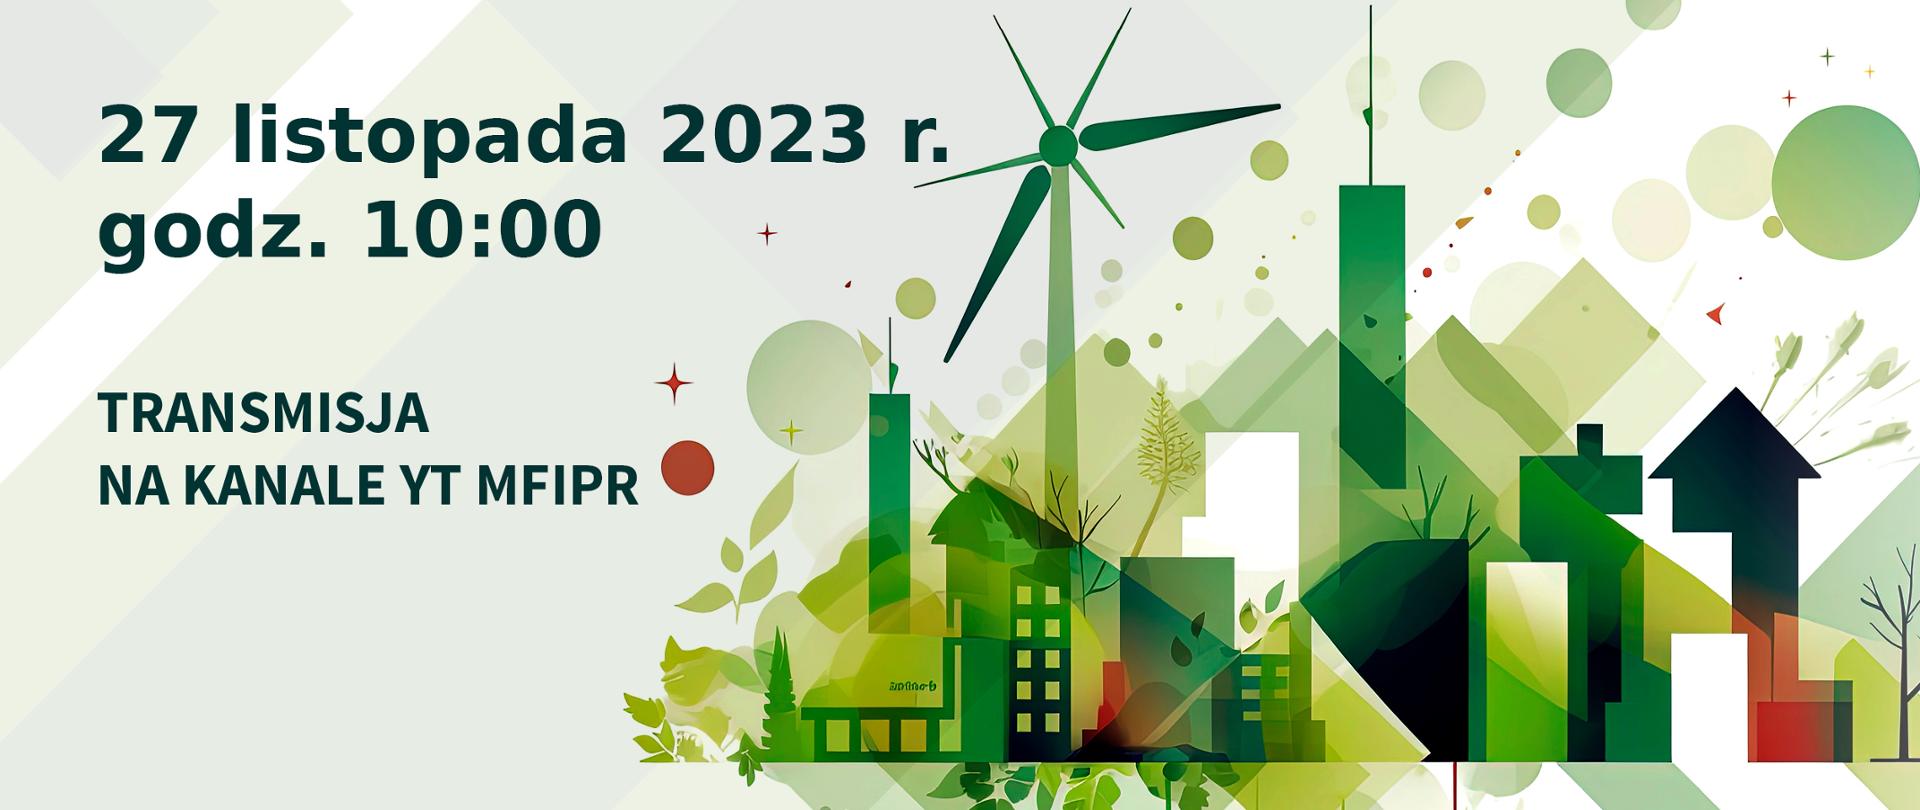 Webinarium online na temat Europejskich Standardów Sprawozdawczości Zrównoważonego Rozwoju
– jak raportować zgodnie z Dyrektywą UE o sprawozdawczości przedsiębiorstw w zakresie zrównoważonego rozwoju (CSRD)
